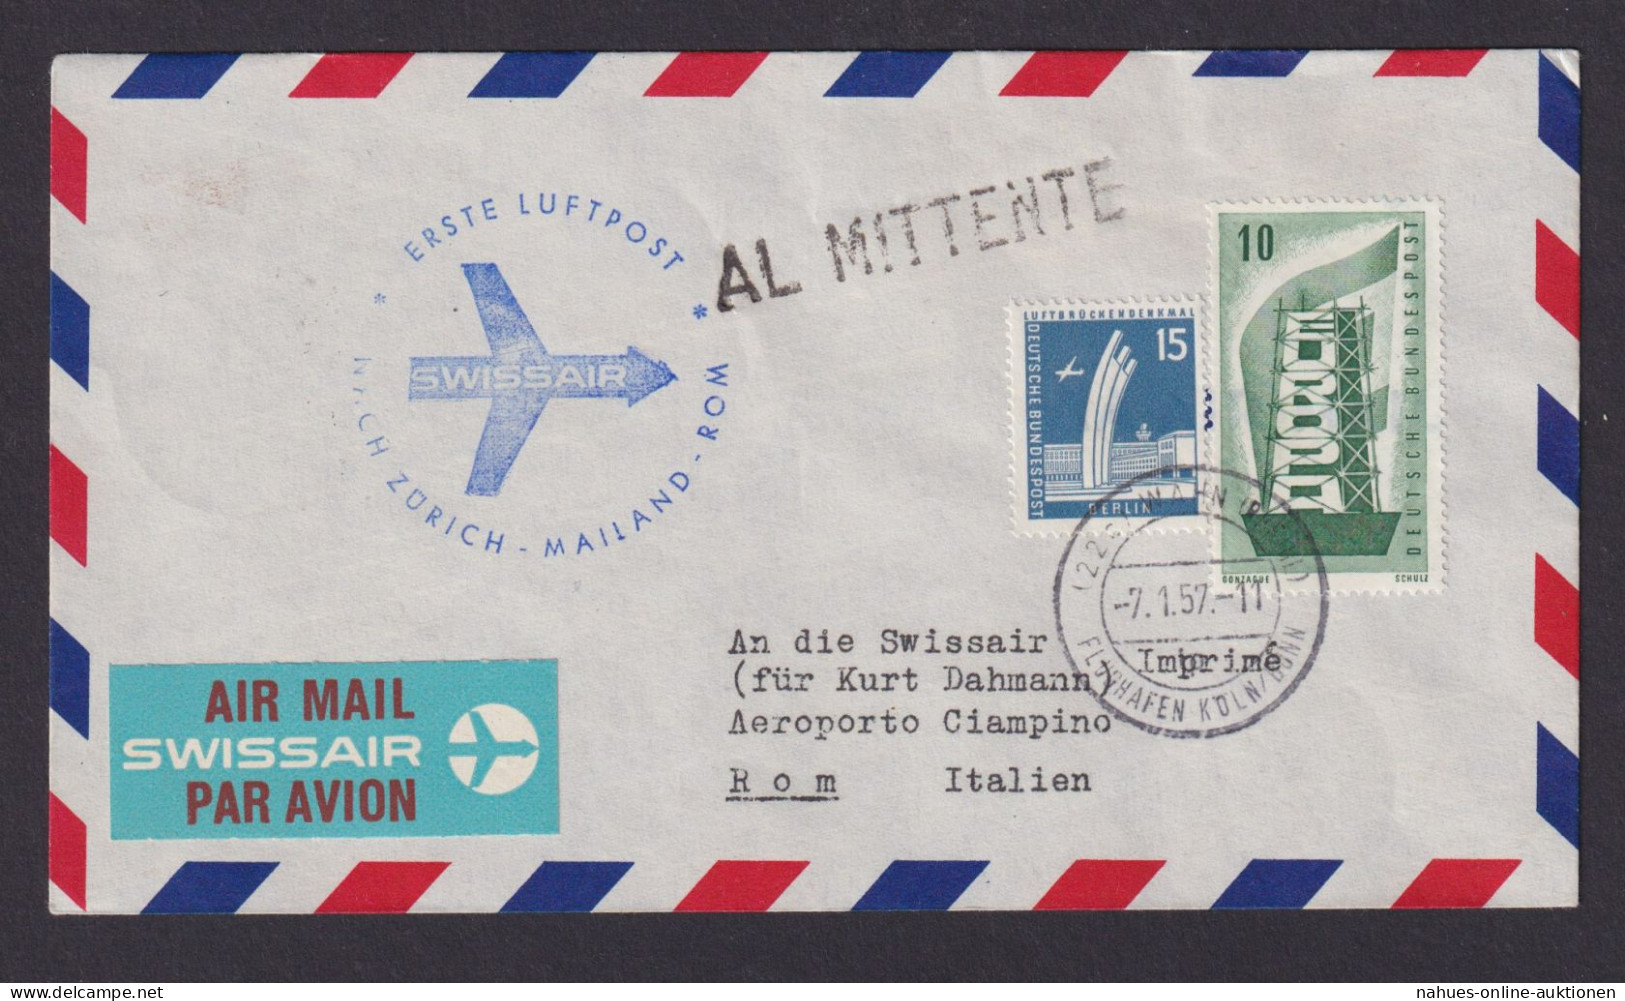 Flugpost Brief Air Mail Swissair Erstflug Zürich Mailand Rom Italien Zuleitung - Covers & Documents